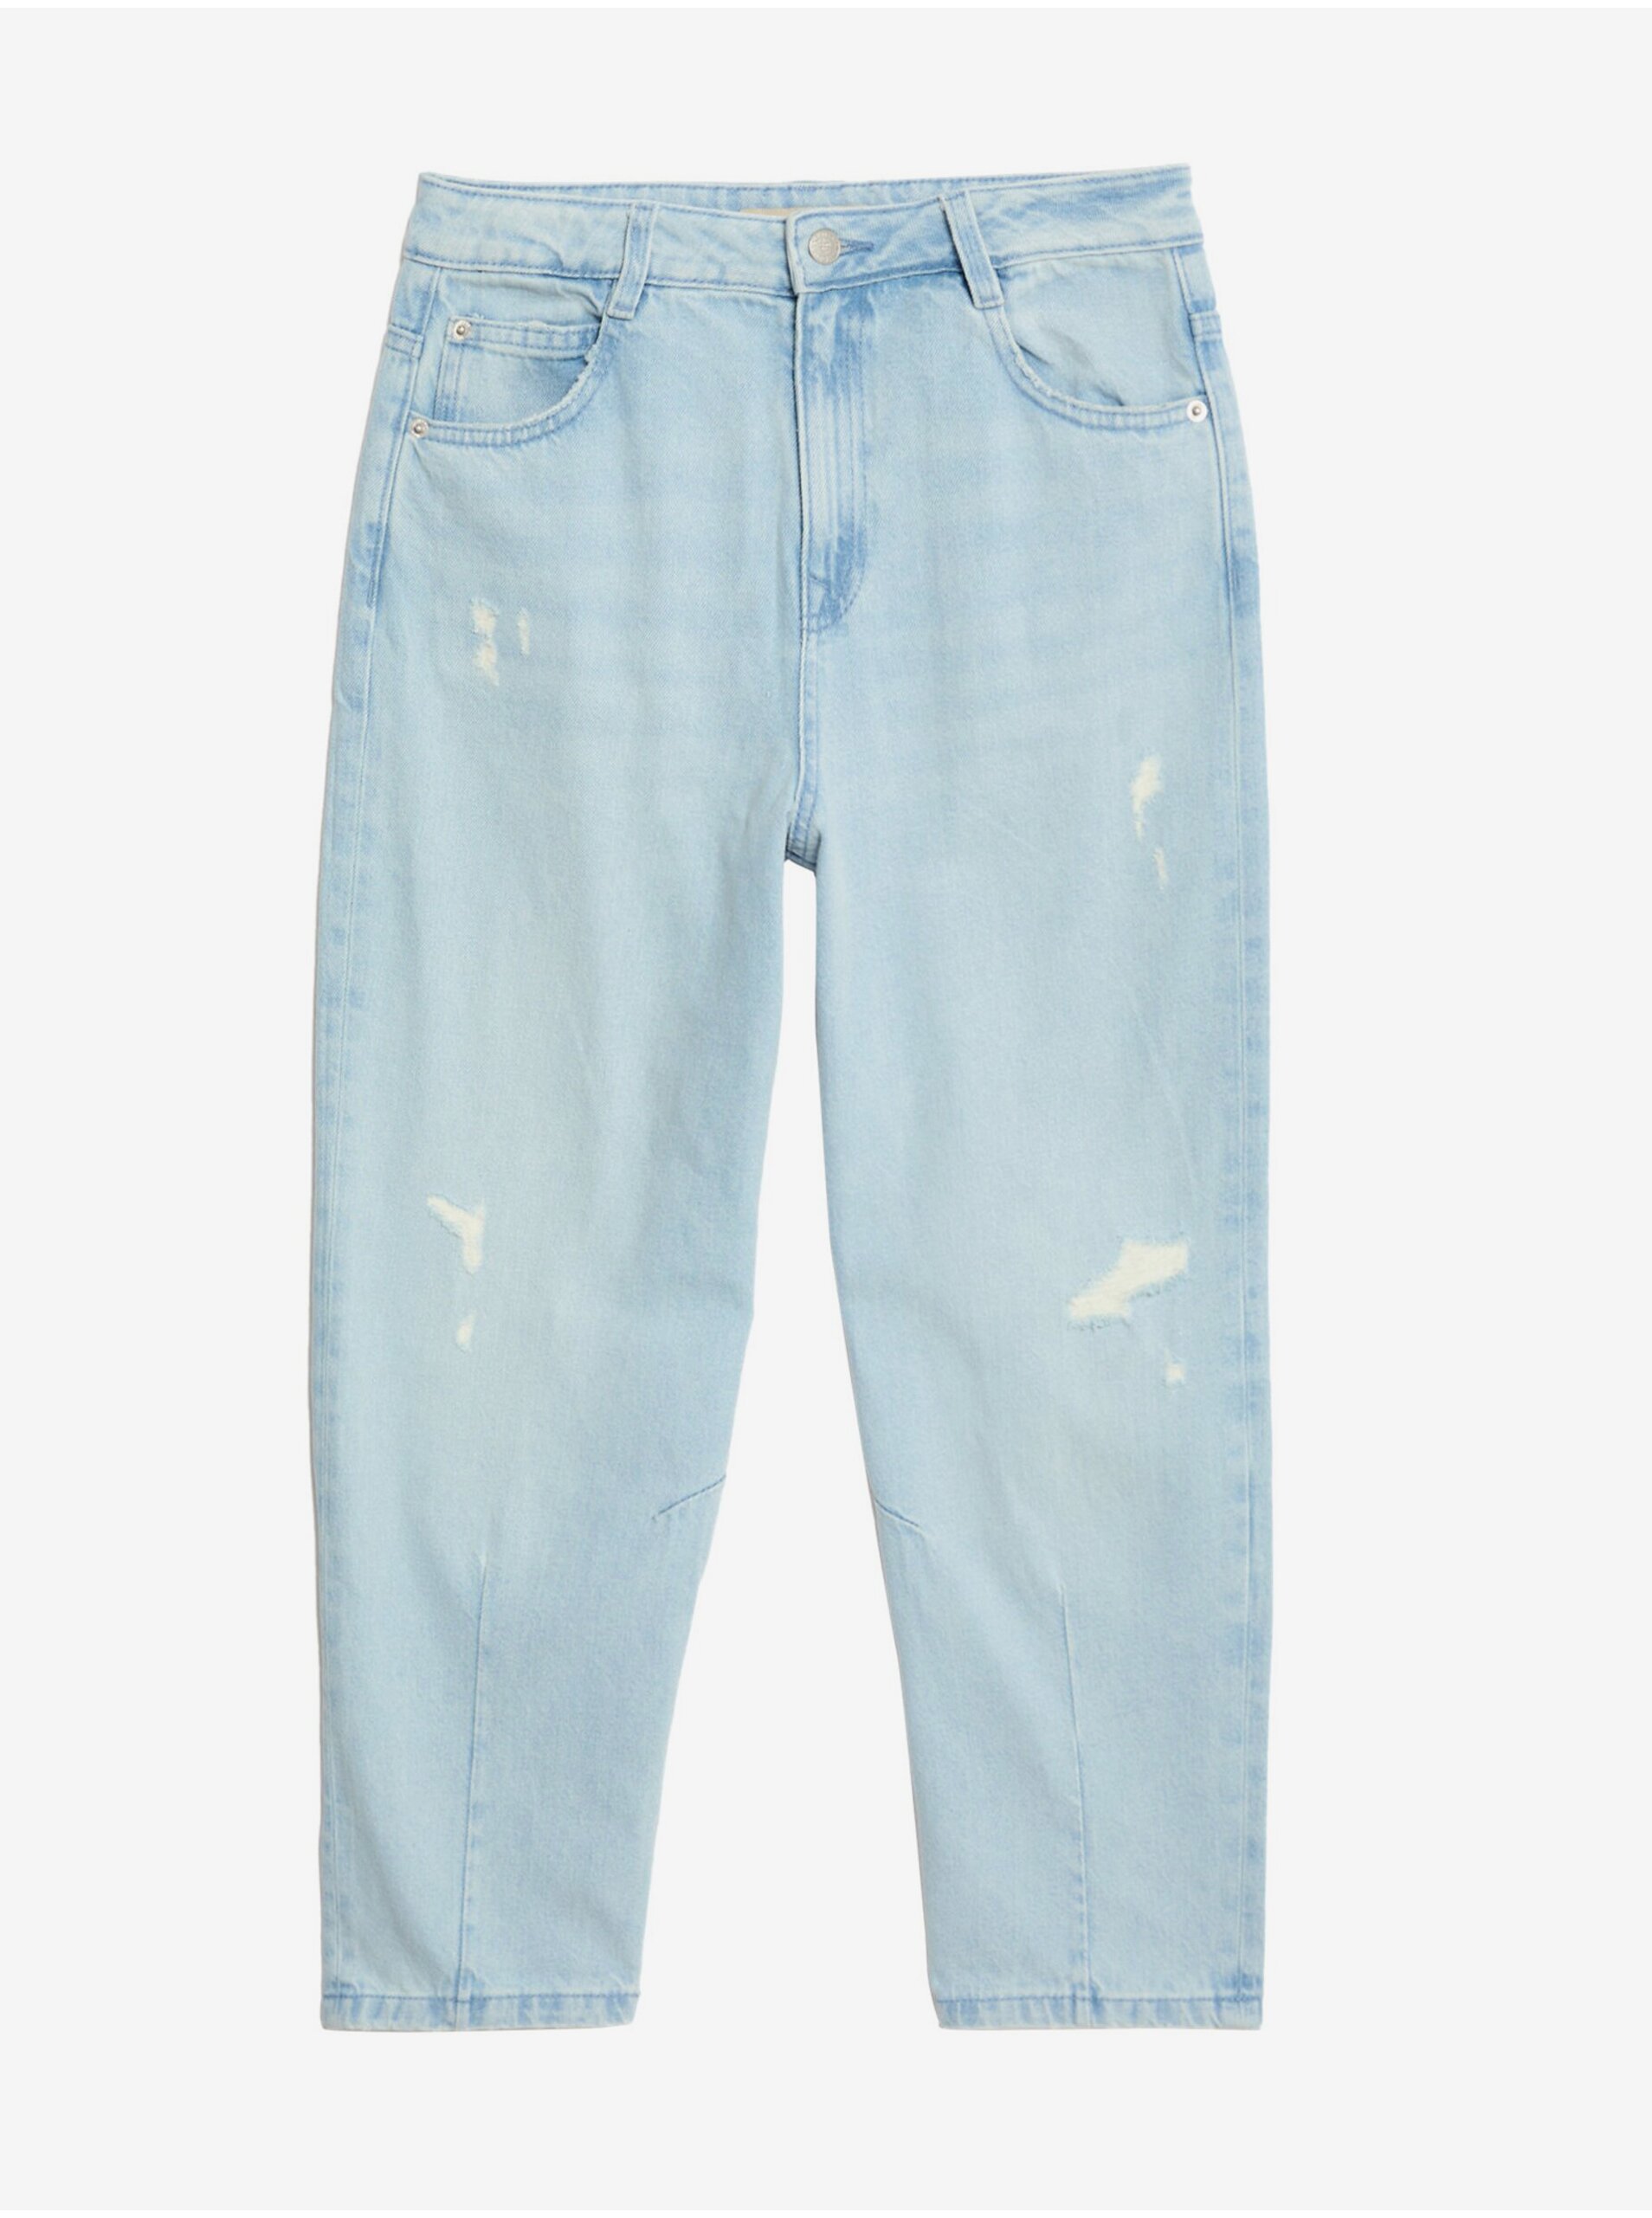 E-shop Světle modré holčičí džíny s potrhaným efektem Marks & Spencer